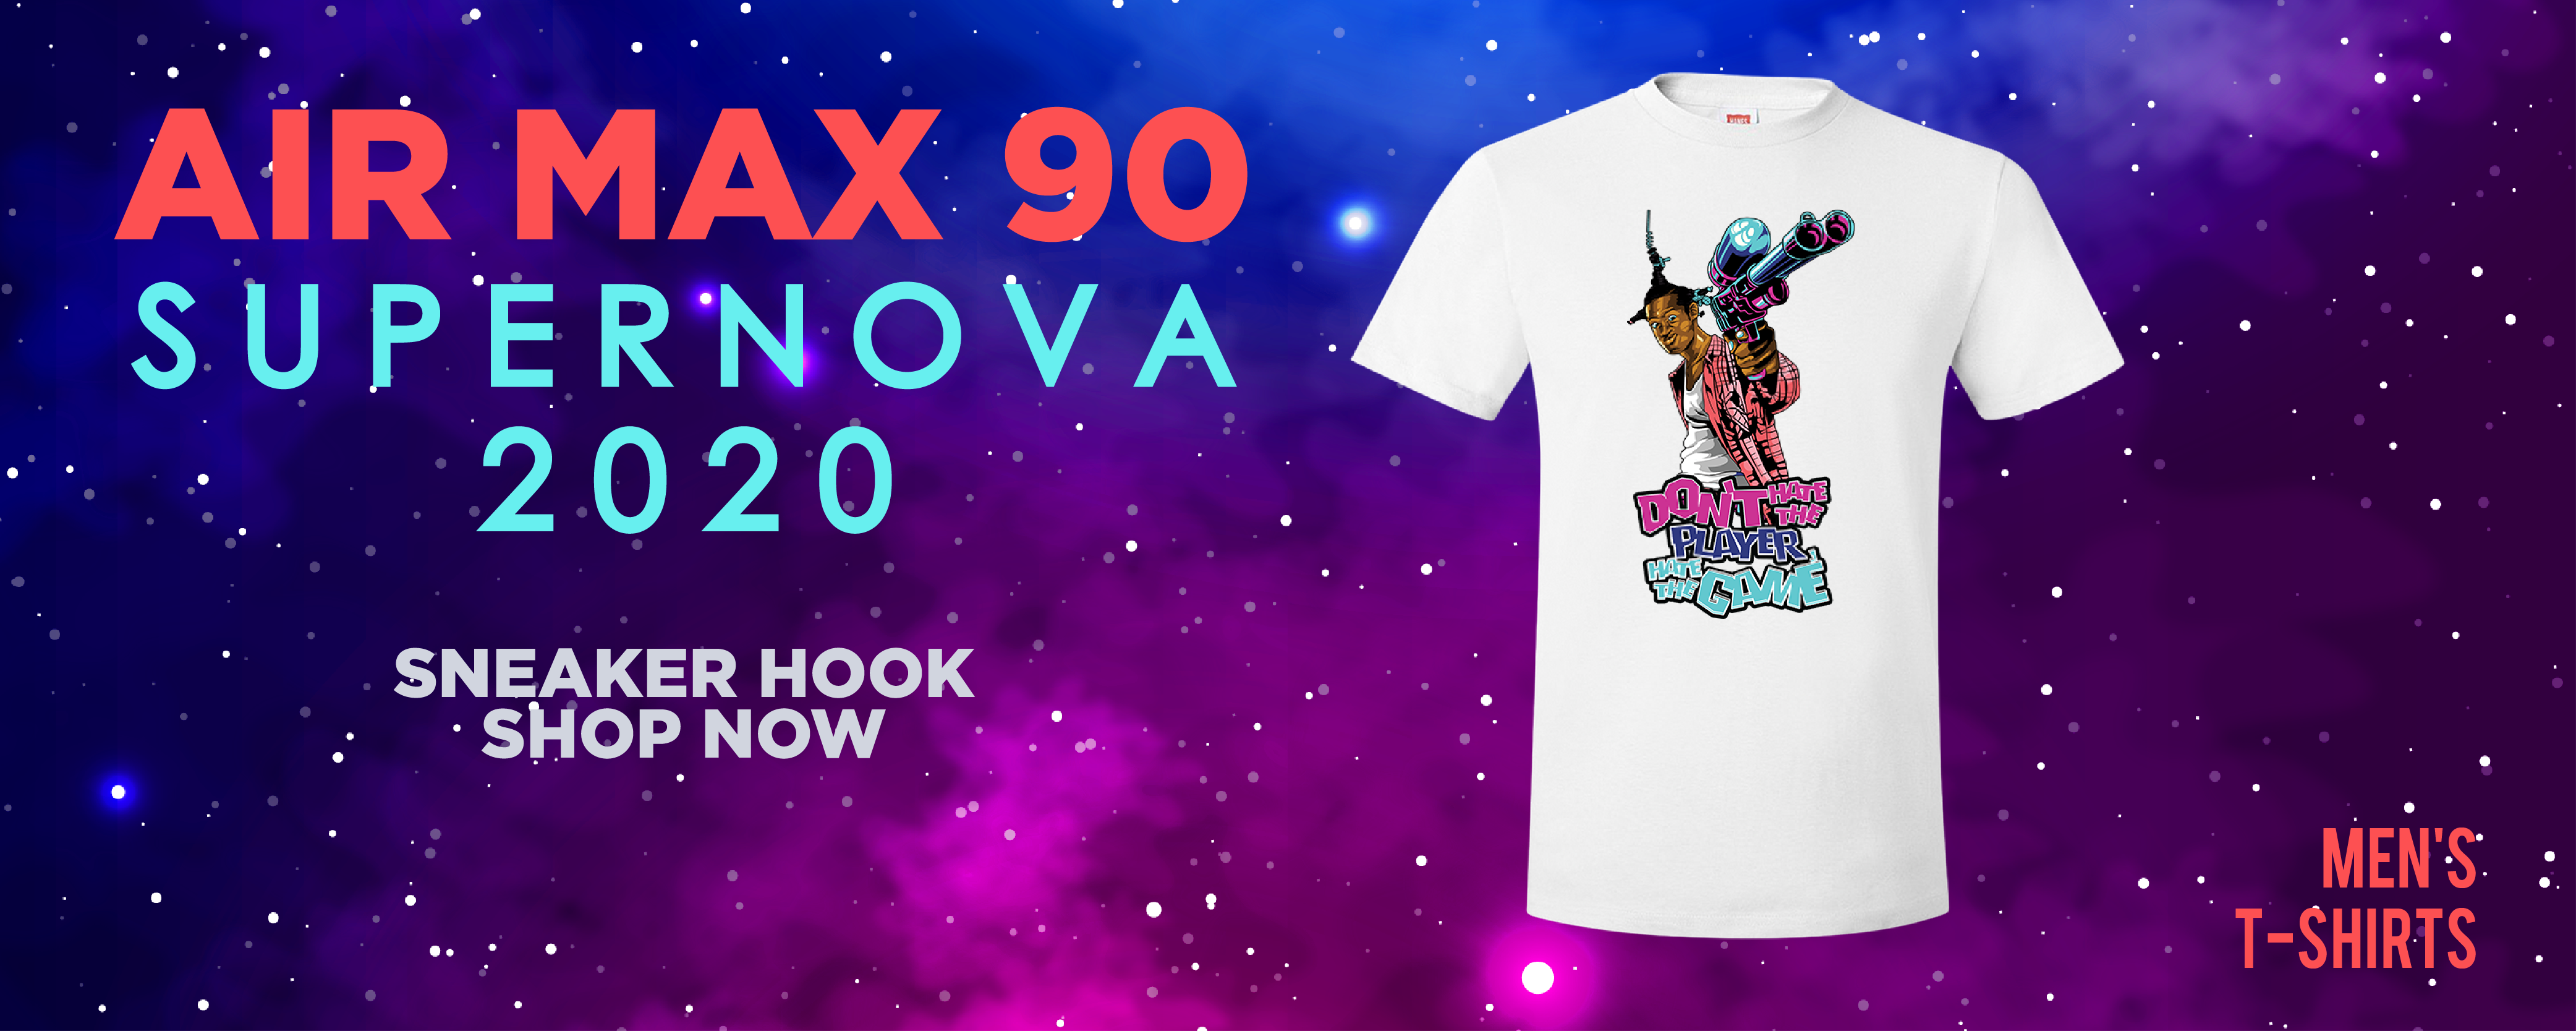 Air Max 90 Supernova 2020 T Shirts to 